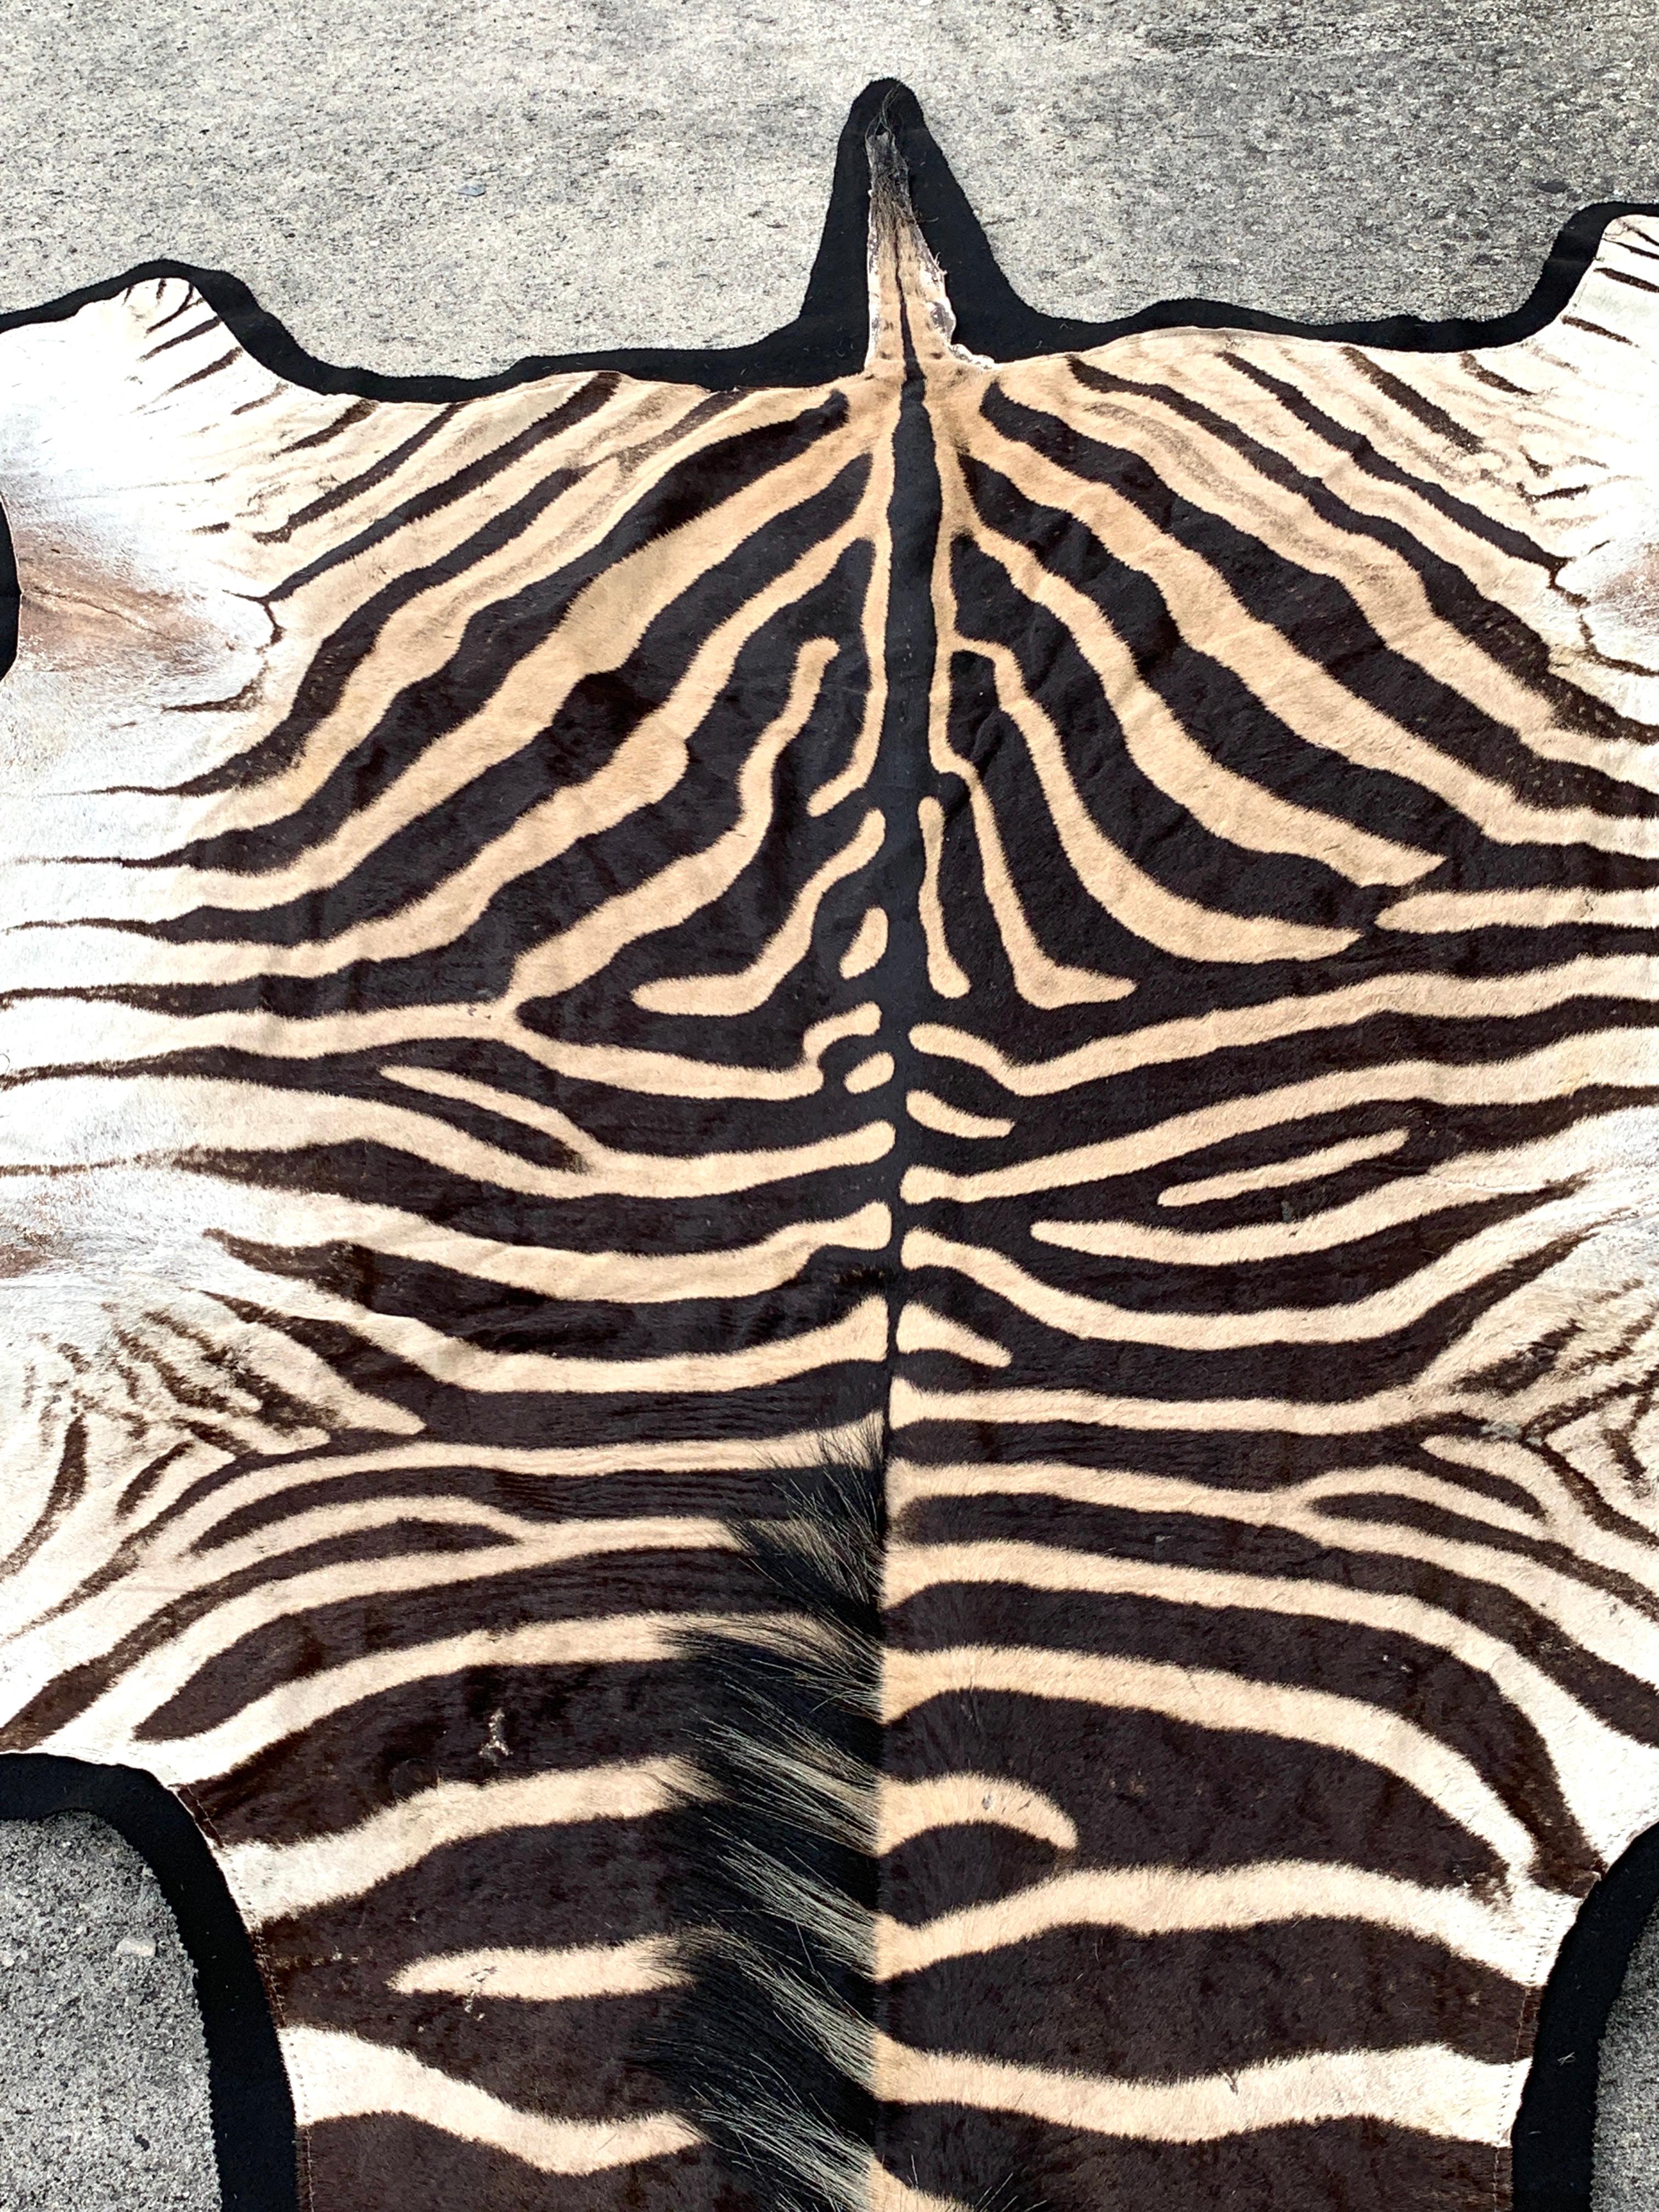 Vintage Zebra Hide Rug, Newly Backed 4